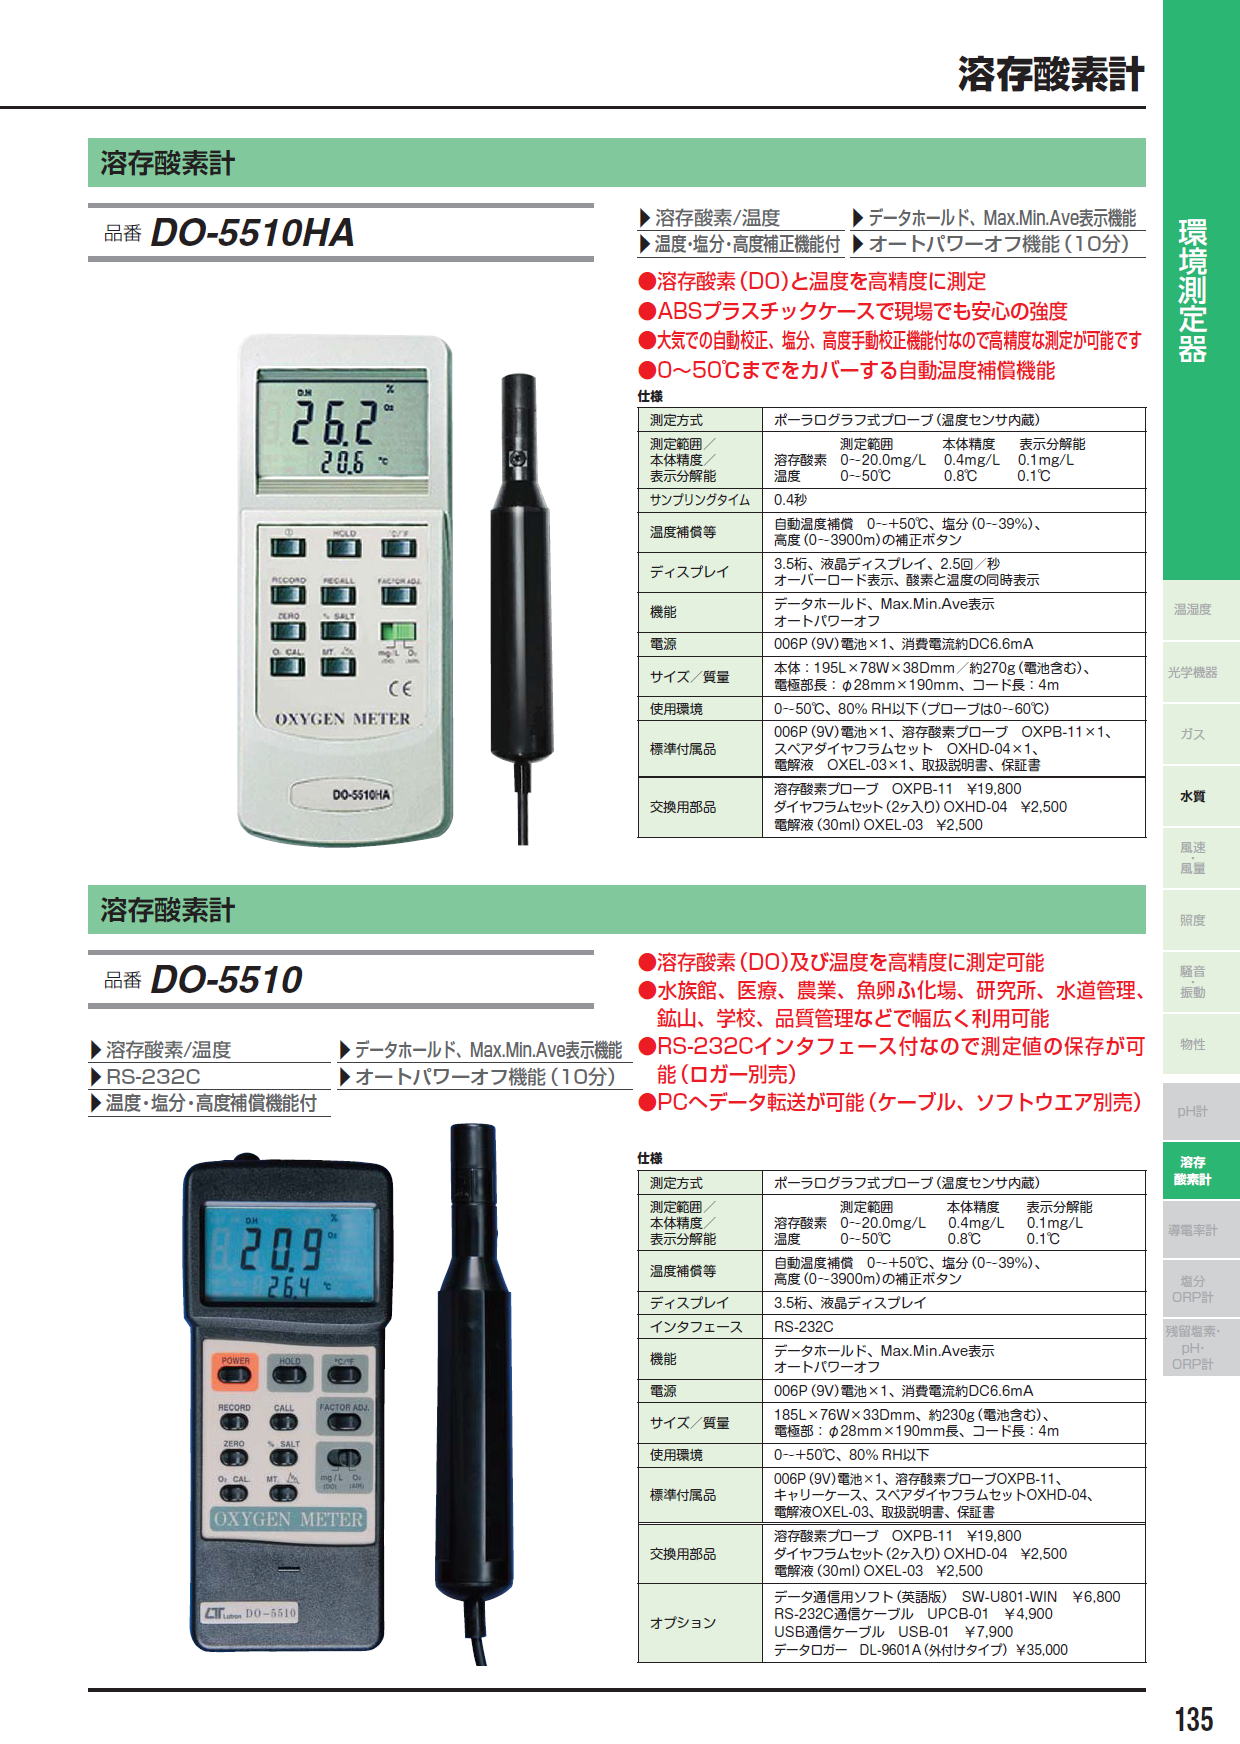 セール価格 ミナトワークスマザーツール デジタル溶存酸素計 DO-5510HA 気中酸素 溶存酸素の計測が可能